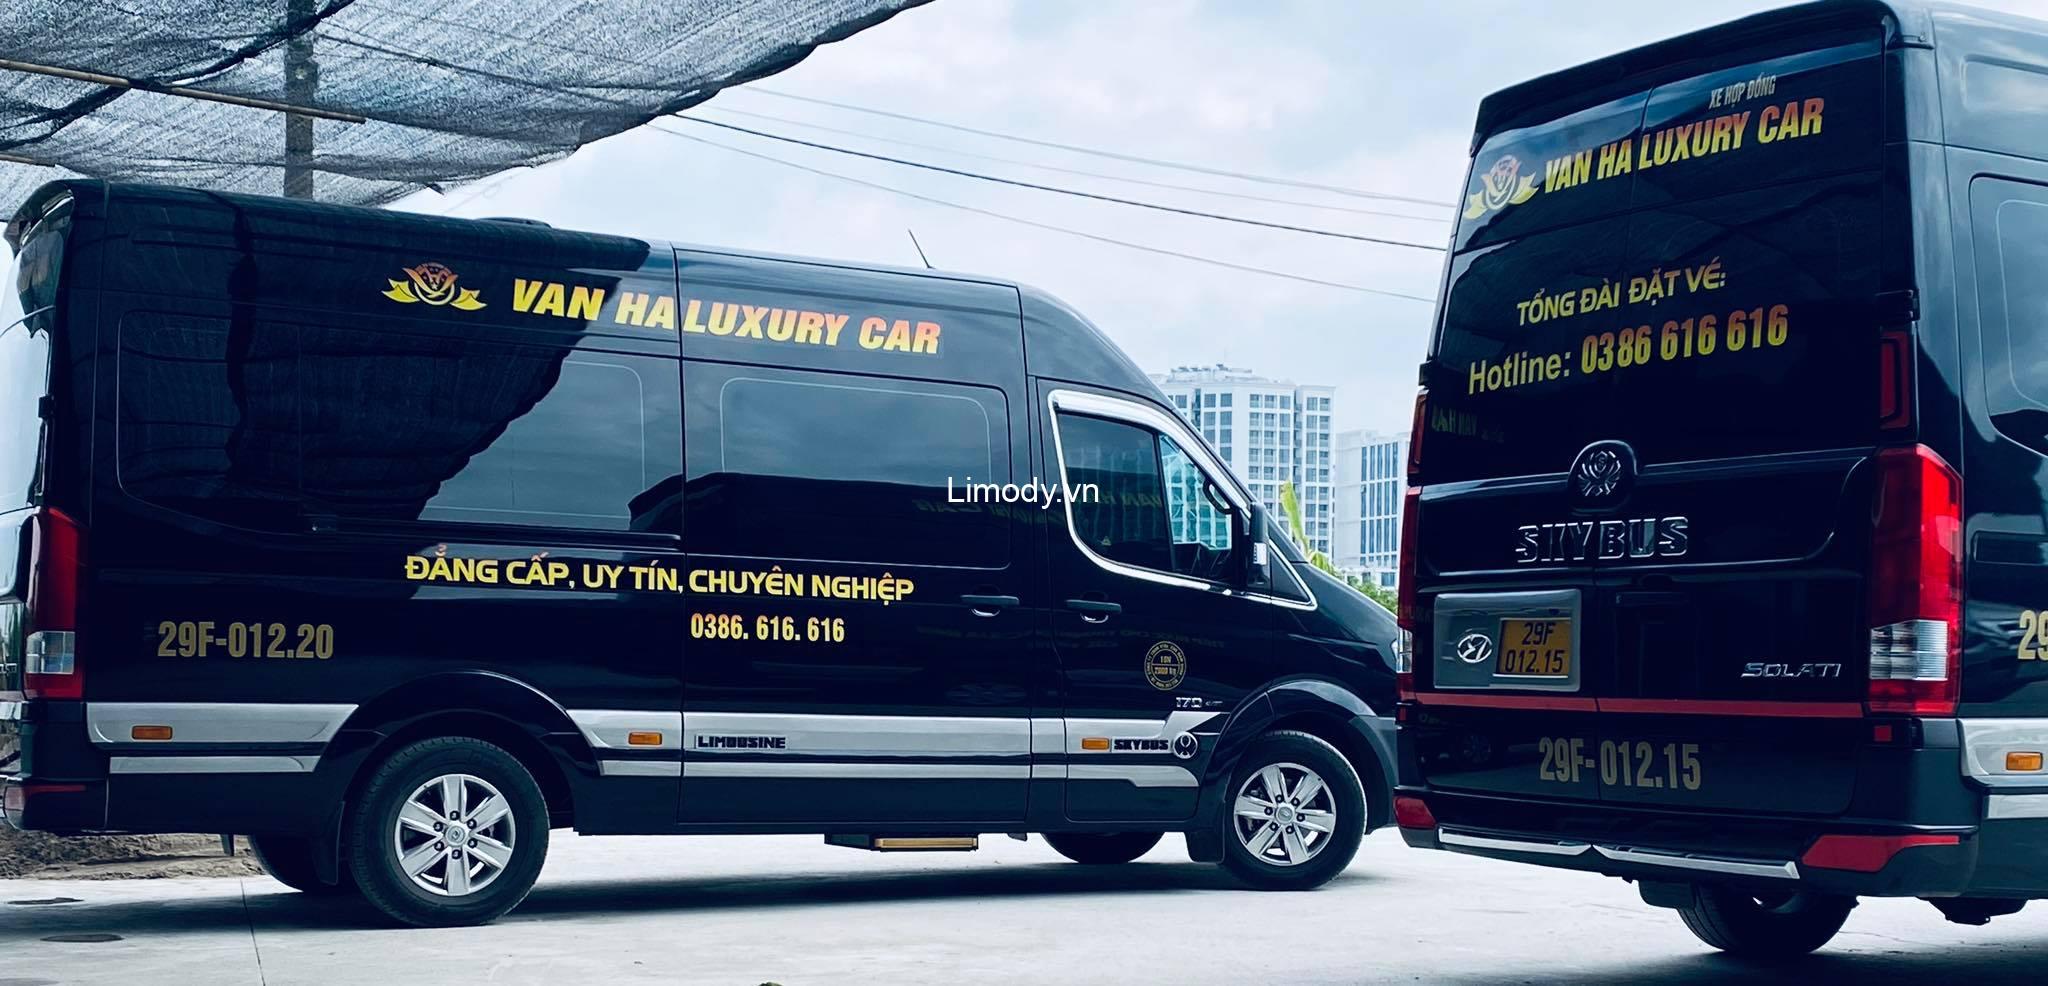 Xe Vân Hà Luxury Car: Bến xe, giá vé, số điện thoại đặt vé, lịch trình Hà Nội – Lạng Sơn